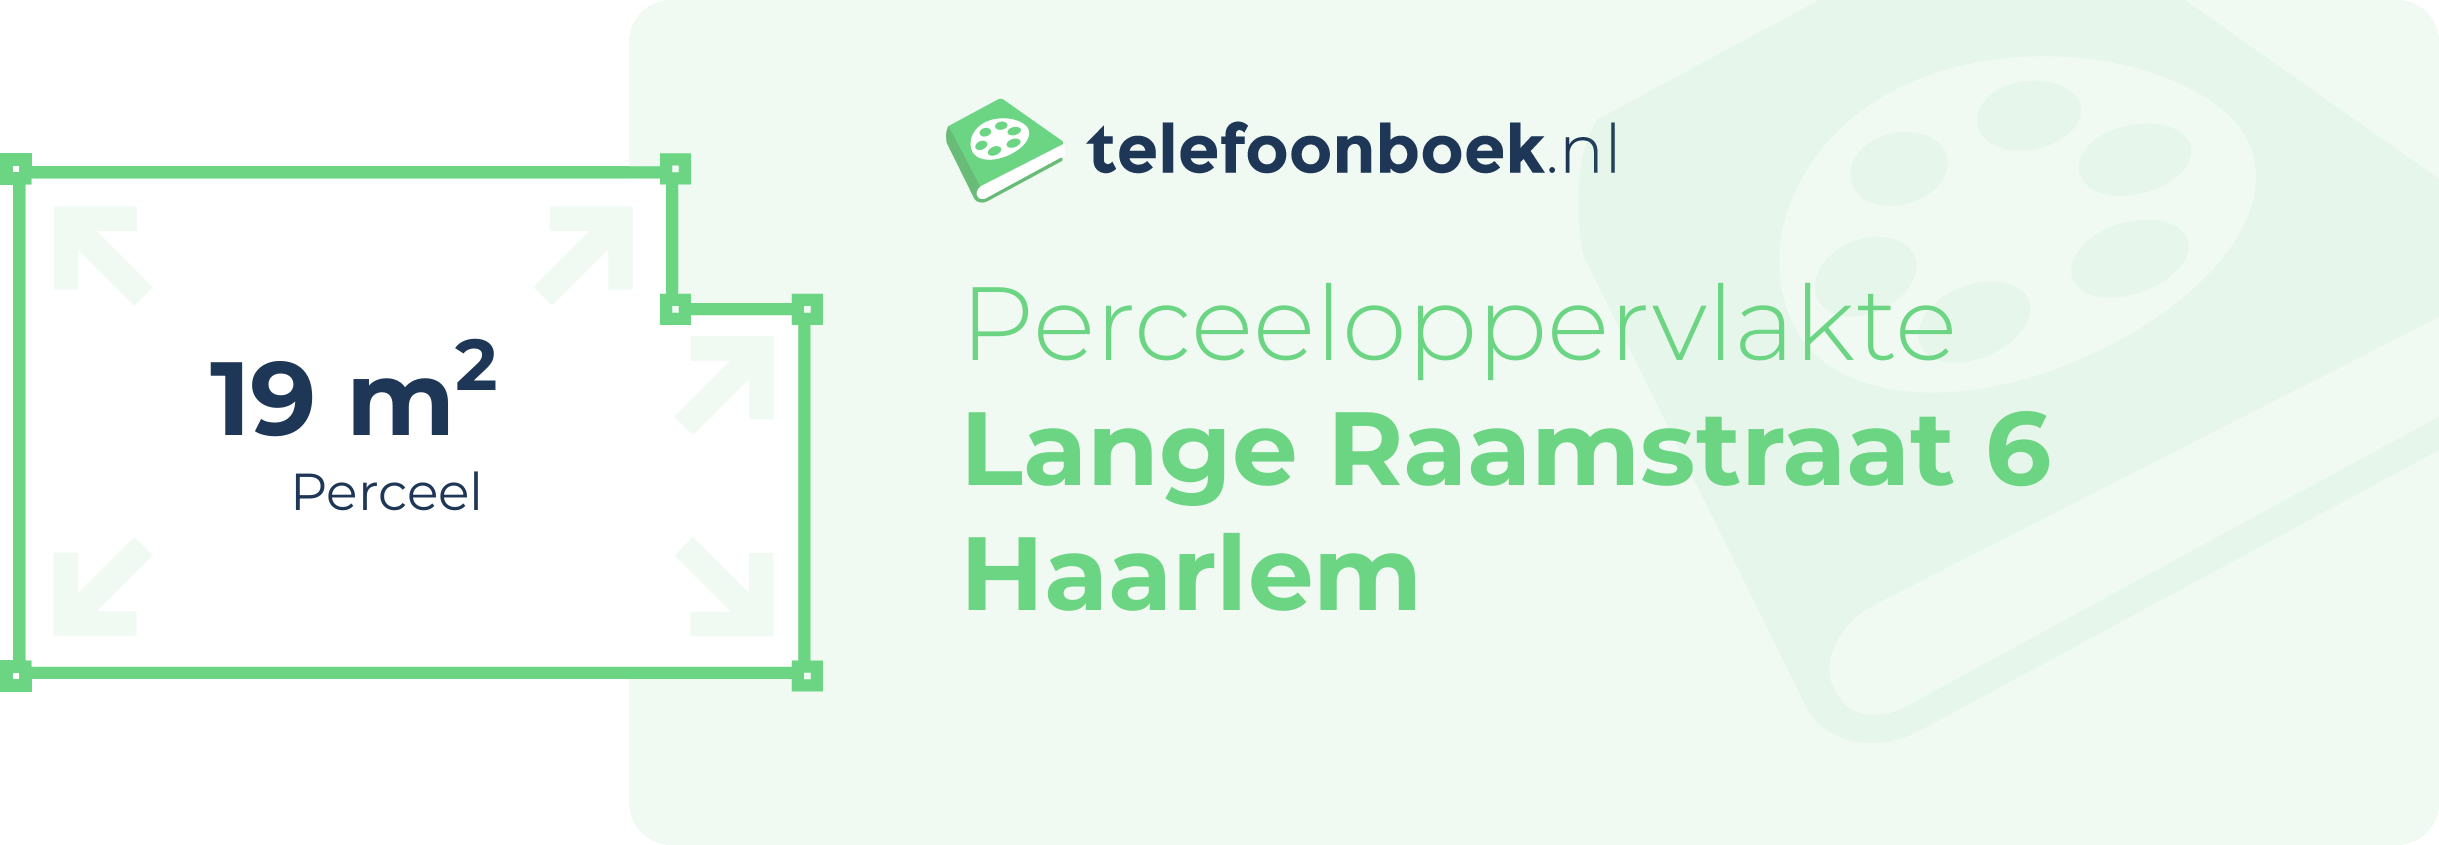 Perceeloppervlakte Lange Raamstraat 6 Haarlem